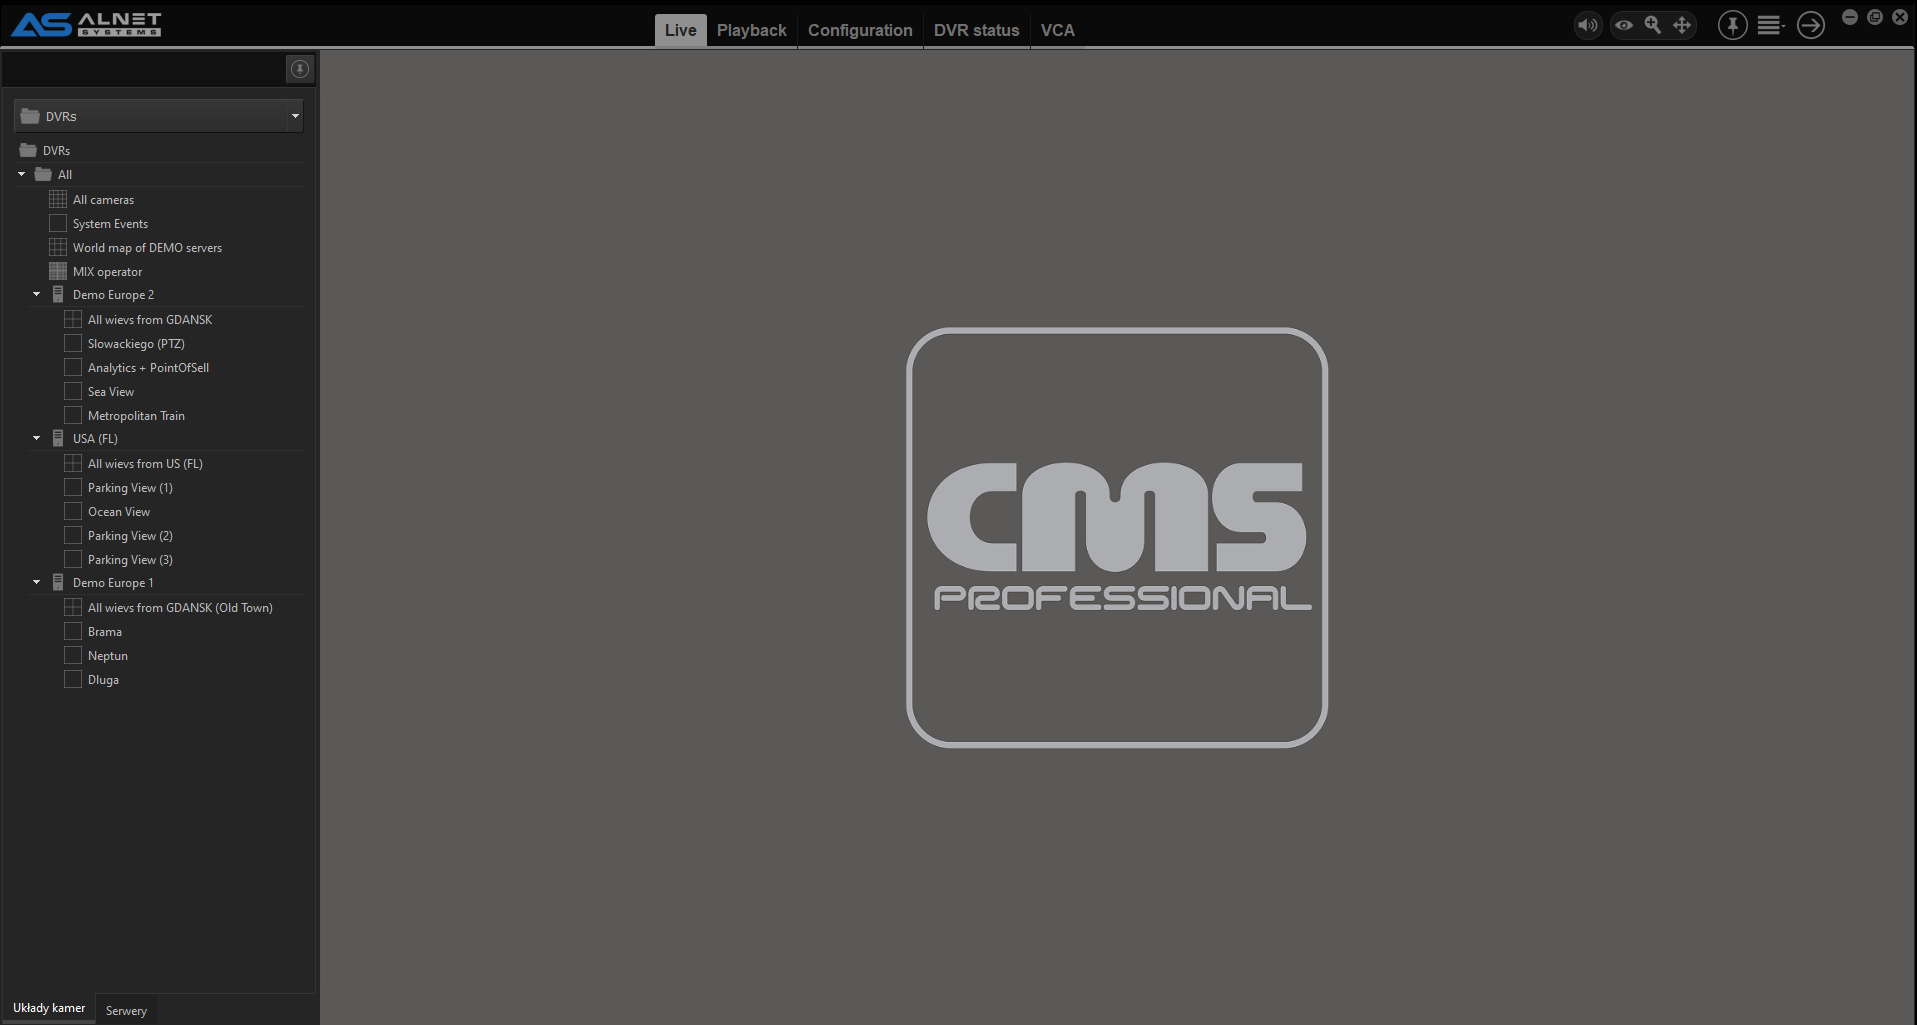 dvr cms software for mac